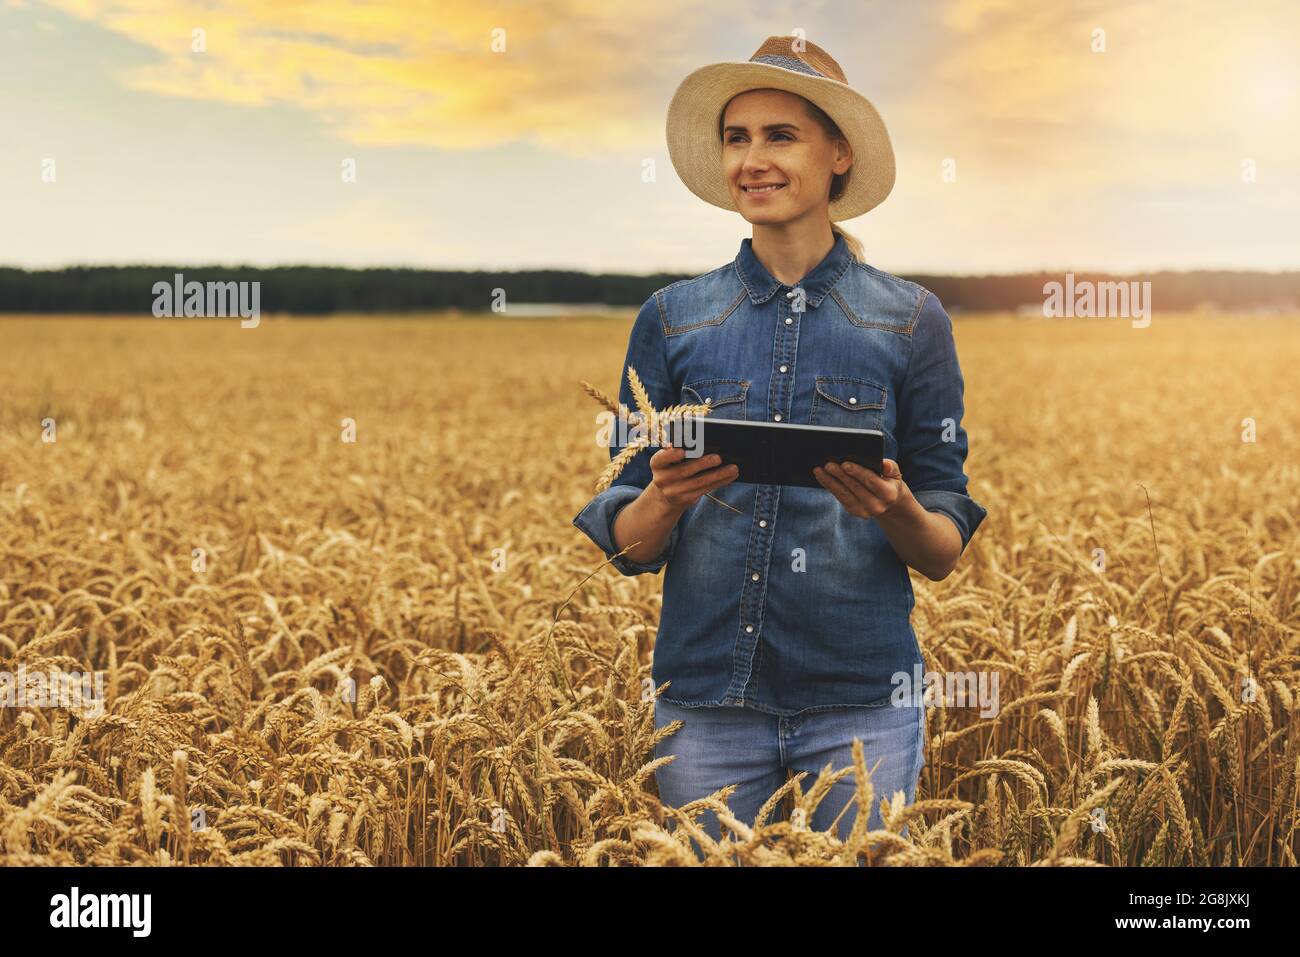 Intelligente und moderne Landwirtschaft. Betriebsführung. Agrargeschäft. Junge Frau erfolgreiche Landwirtin im Getreidefeld mit digitalem Tablet in den Händen stehend Stockfoto